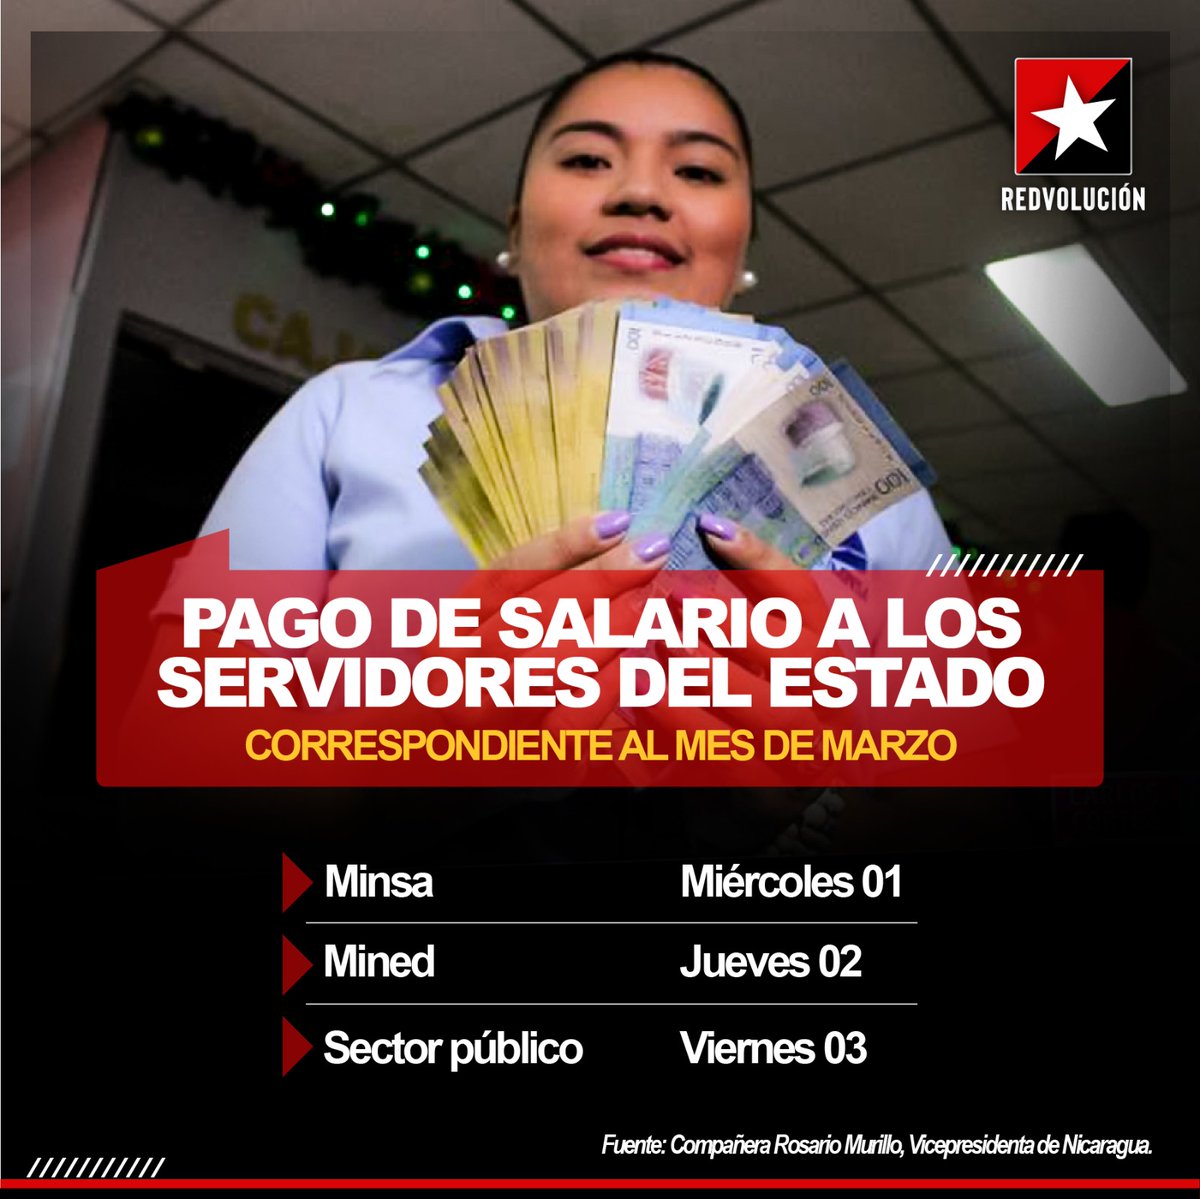 Pago de salarios a servidores del estado inicia el 01 de Marzo en imagen detalles 👇👇👇
#MasVictoriasPuebloPresidente